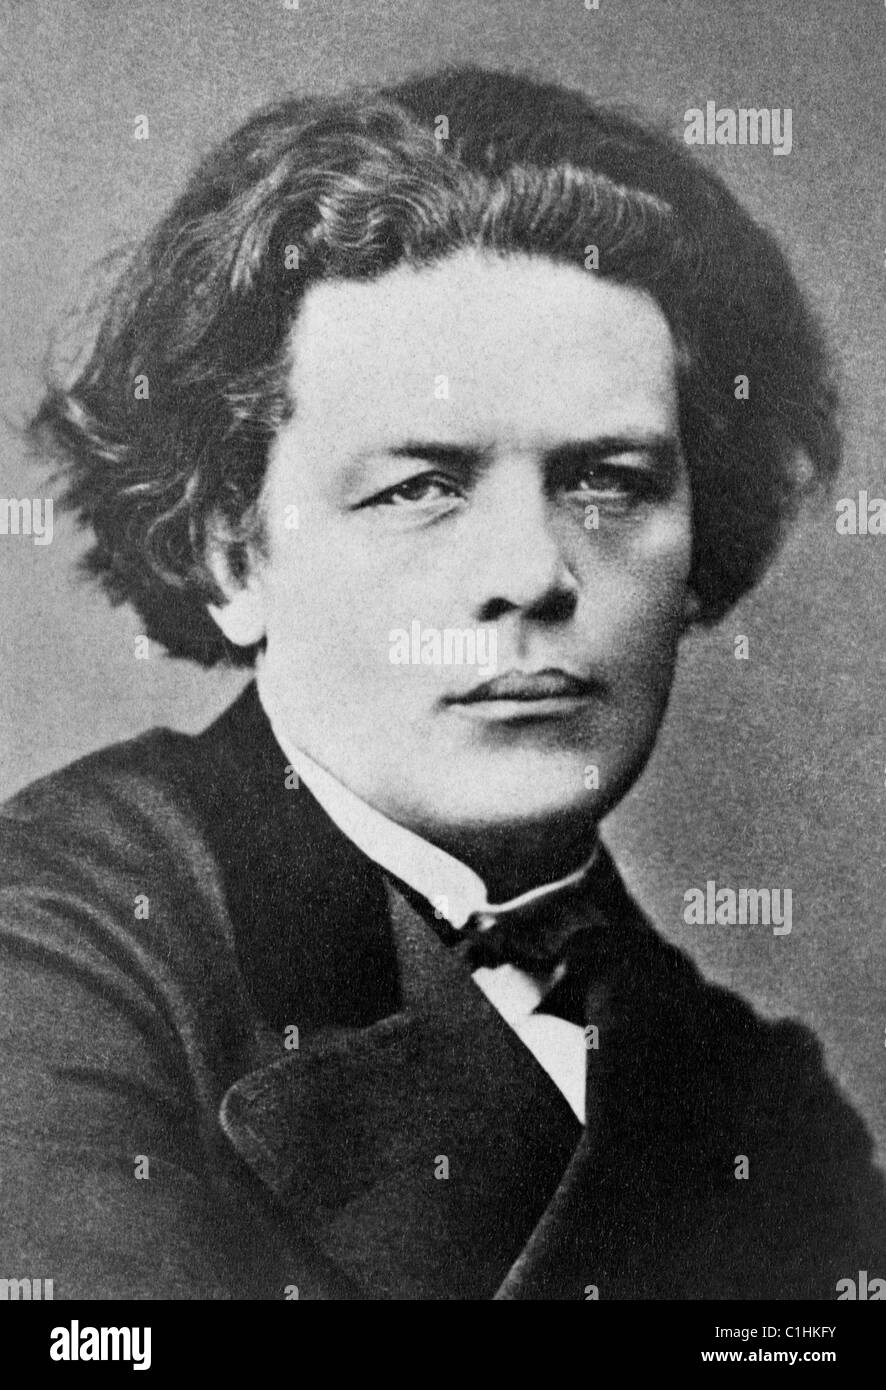 Vintage-Portraitfoto des russischen Pianisten, Komponisten und Dirigenten Anton Rubinstein (1829 – 1894). Foto ca. 1870. Stockfoto